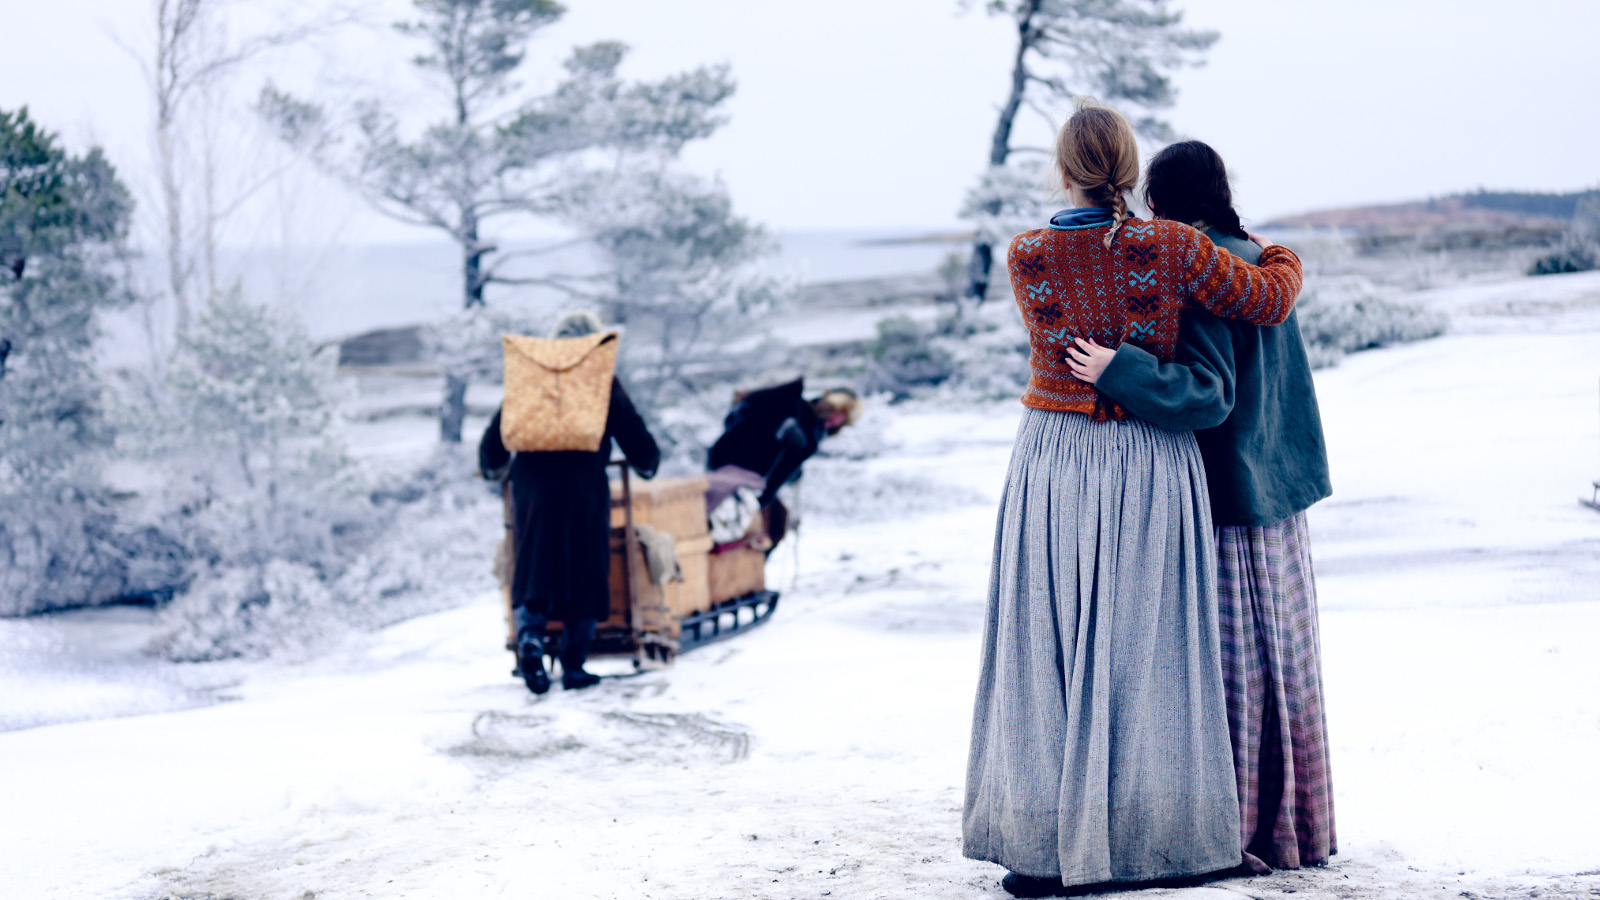 Kuvassa on kaksi naista selin pitkissä hameissa, mies lähtee rekeä työntäen kohti jäistä merta. Maassa on lunta.